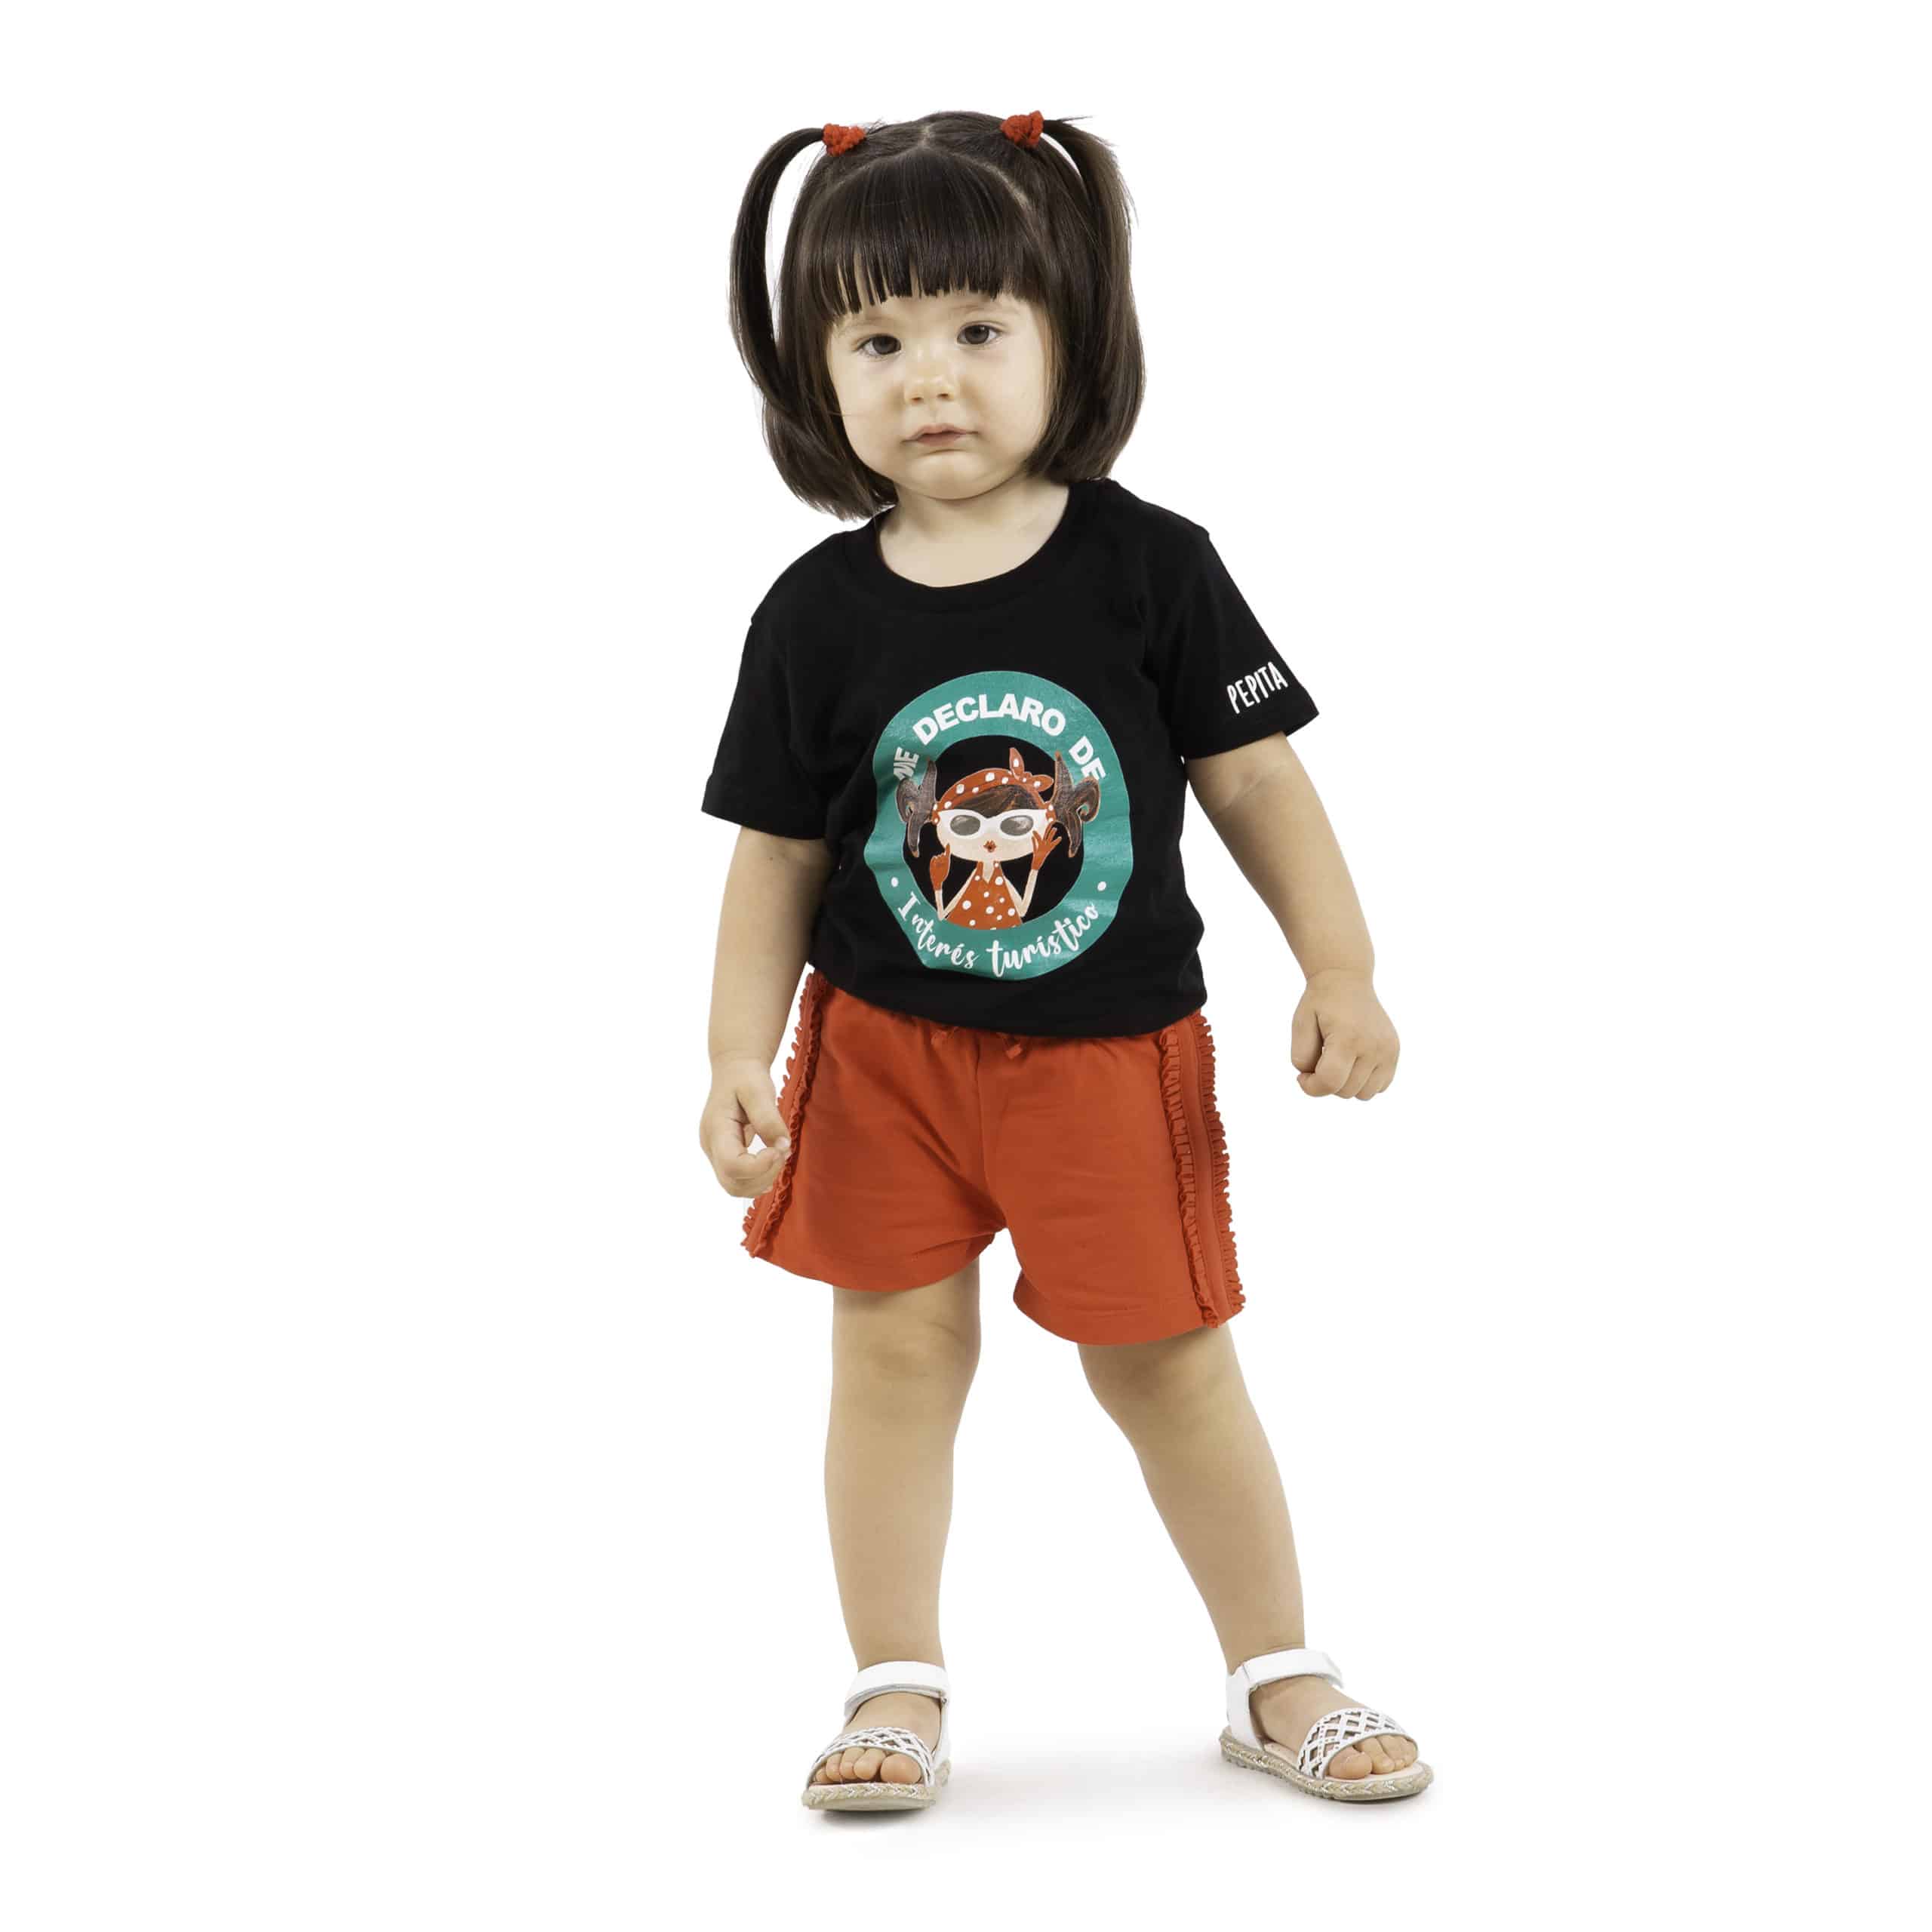 Camiseta de algodón orgánico de la marca Pepita Viajera en color negro para aquellas que se declaran de Interés Turístico. Vista puesta en modelo bebe chica